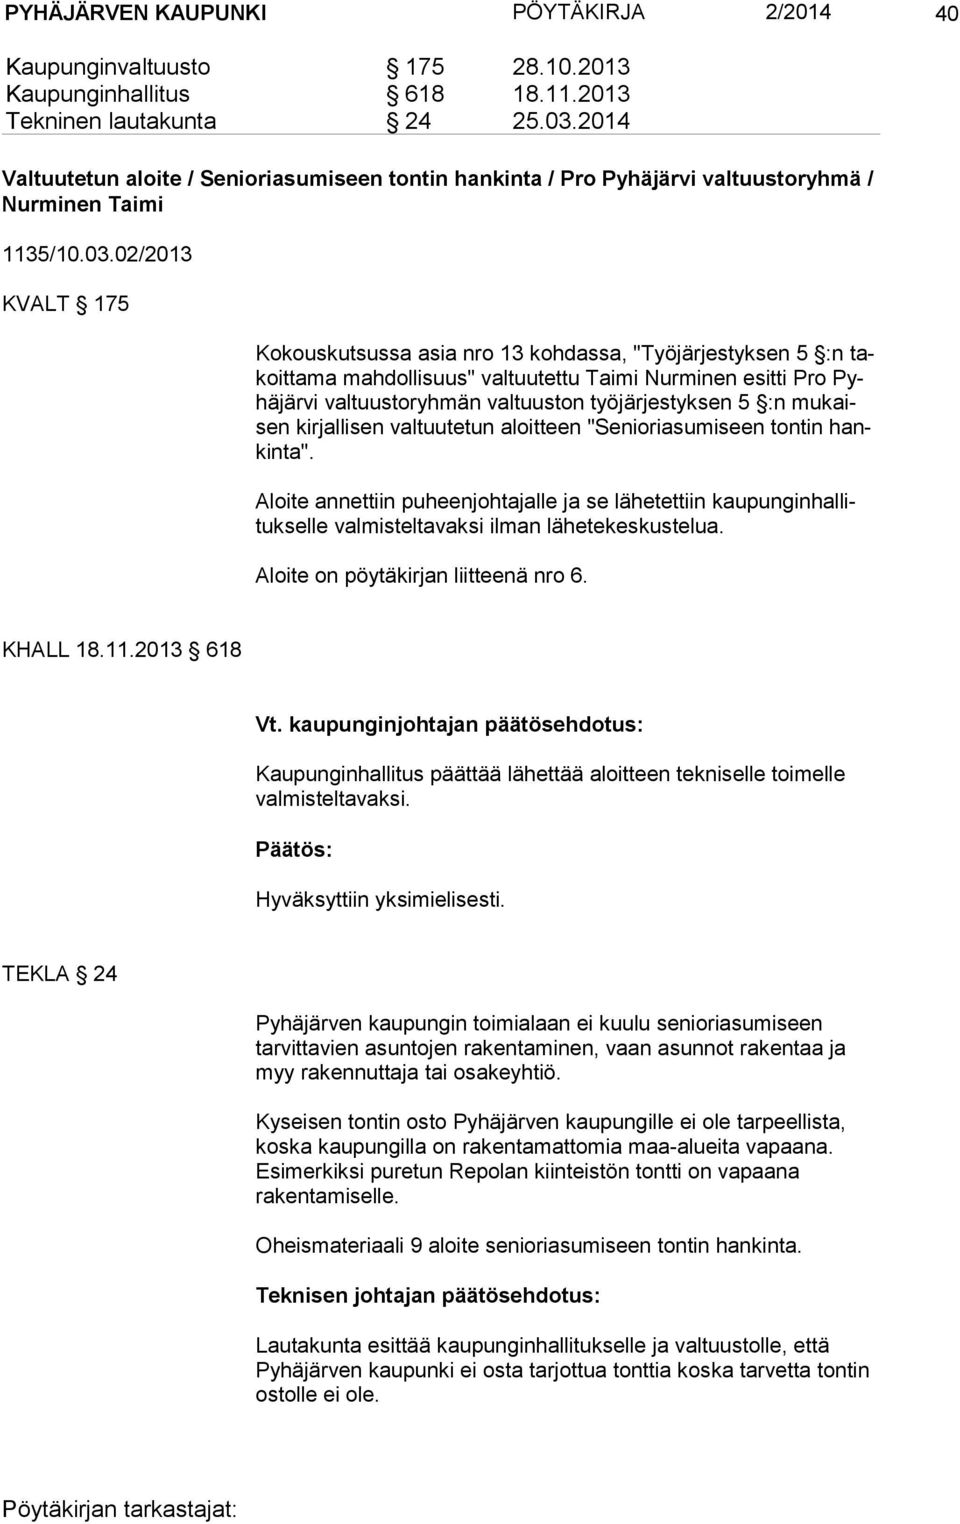 02/2013 KVALT 175 Kokouskutsussa asia nro 13 kohdassa, "Työjärjestyksen 5 :n takoit ta ma mahdollisuus" valtuutettu Taimi Nurminen esitti Pro Pyhä jär vi valtuustoryhmän valtuuston työjärjestyksen 5